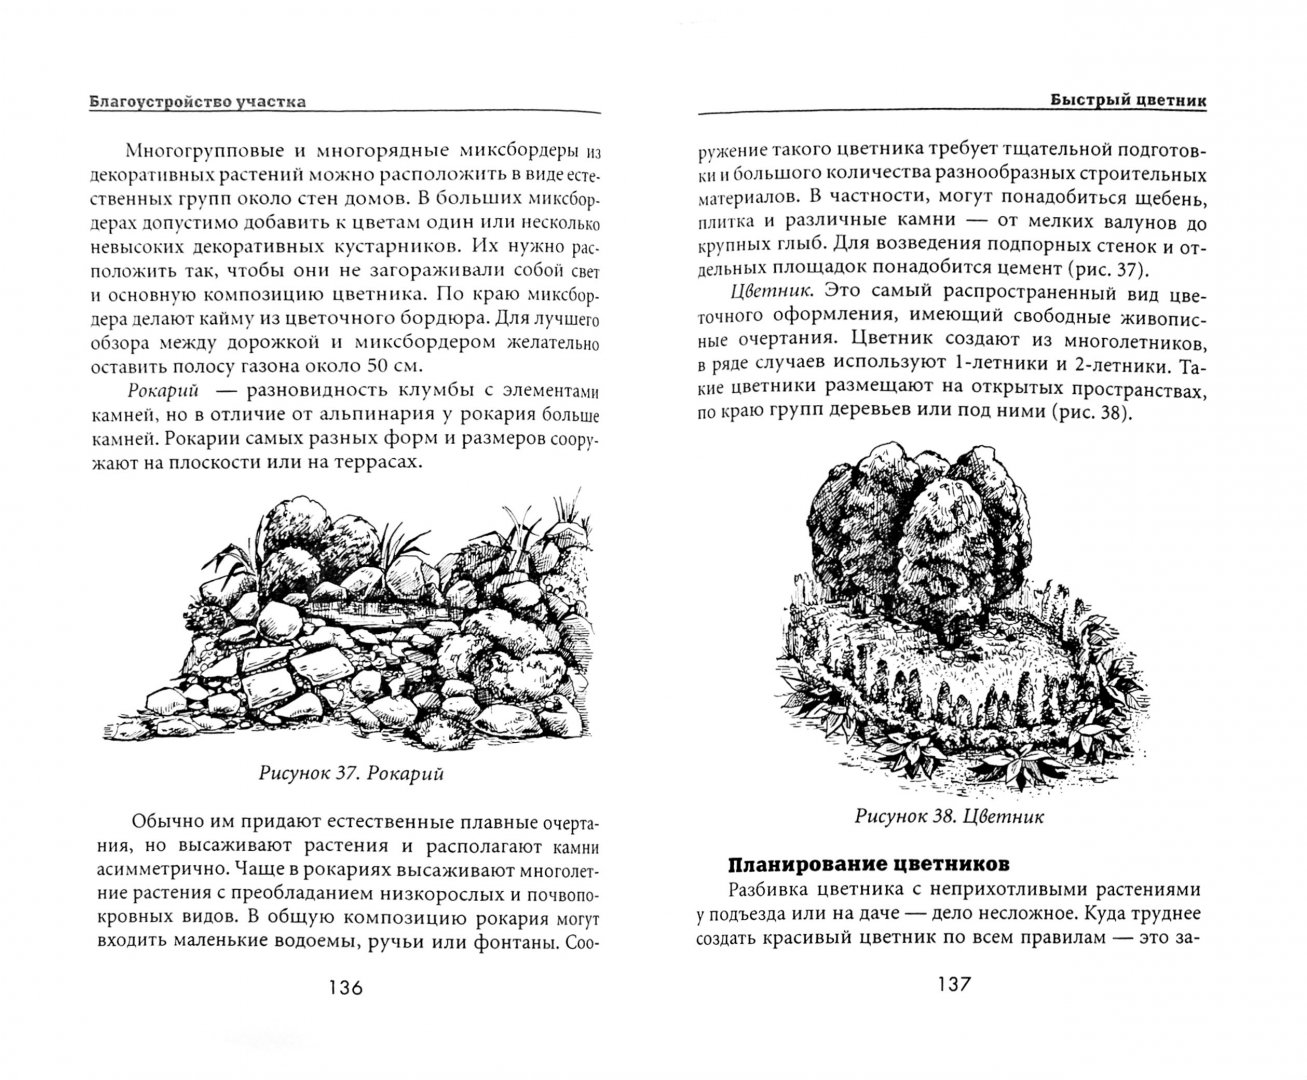 Иллюстрация 1 из 7 для Благоустройство участка - Жмакин, Плотникова | Лабиринт - книги. Источник: Лабиринт